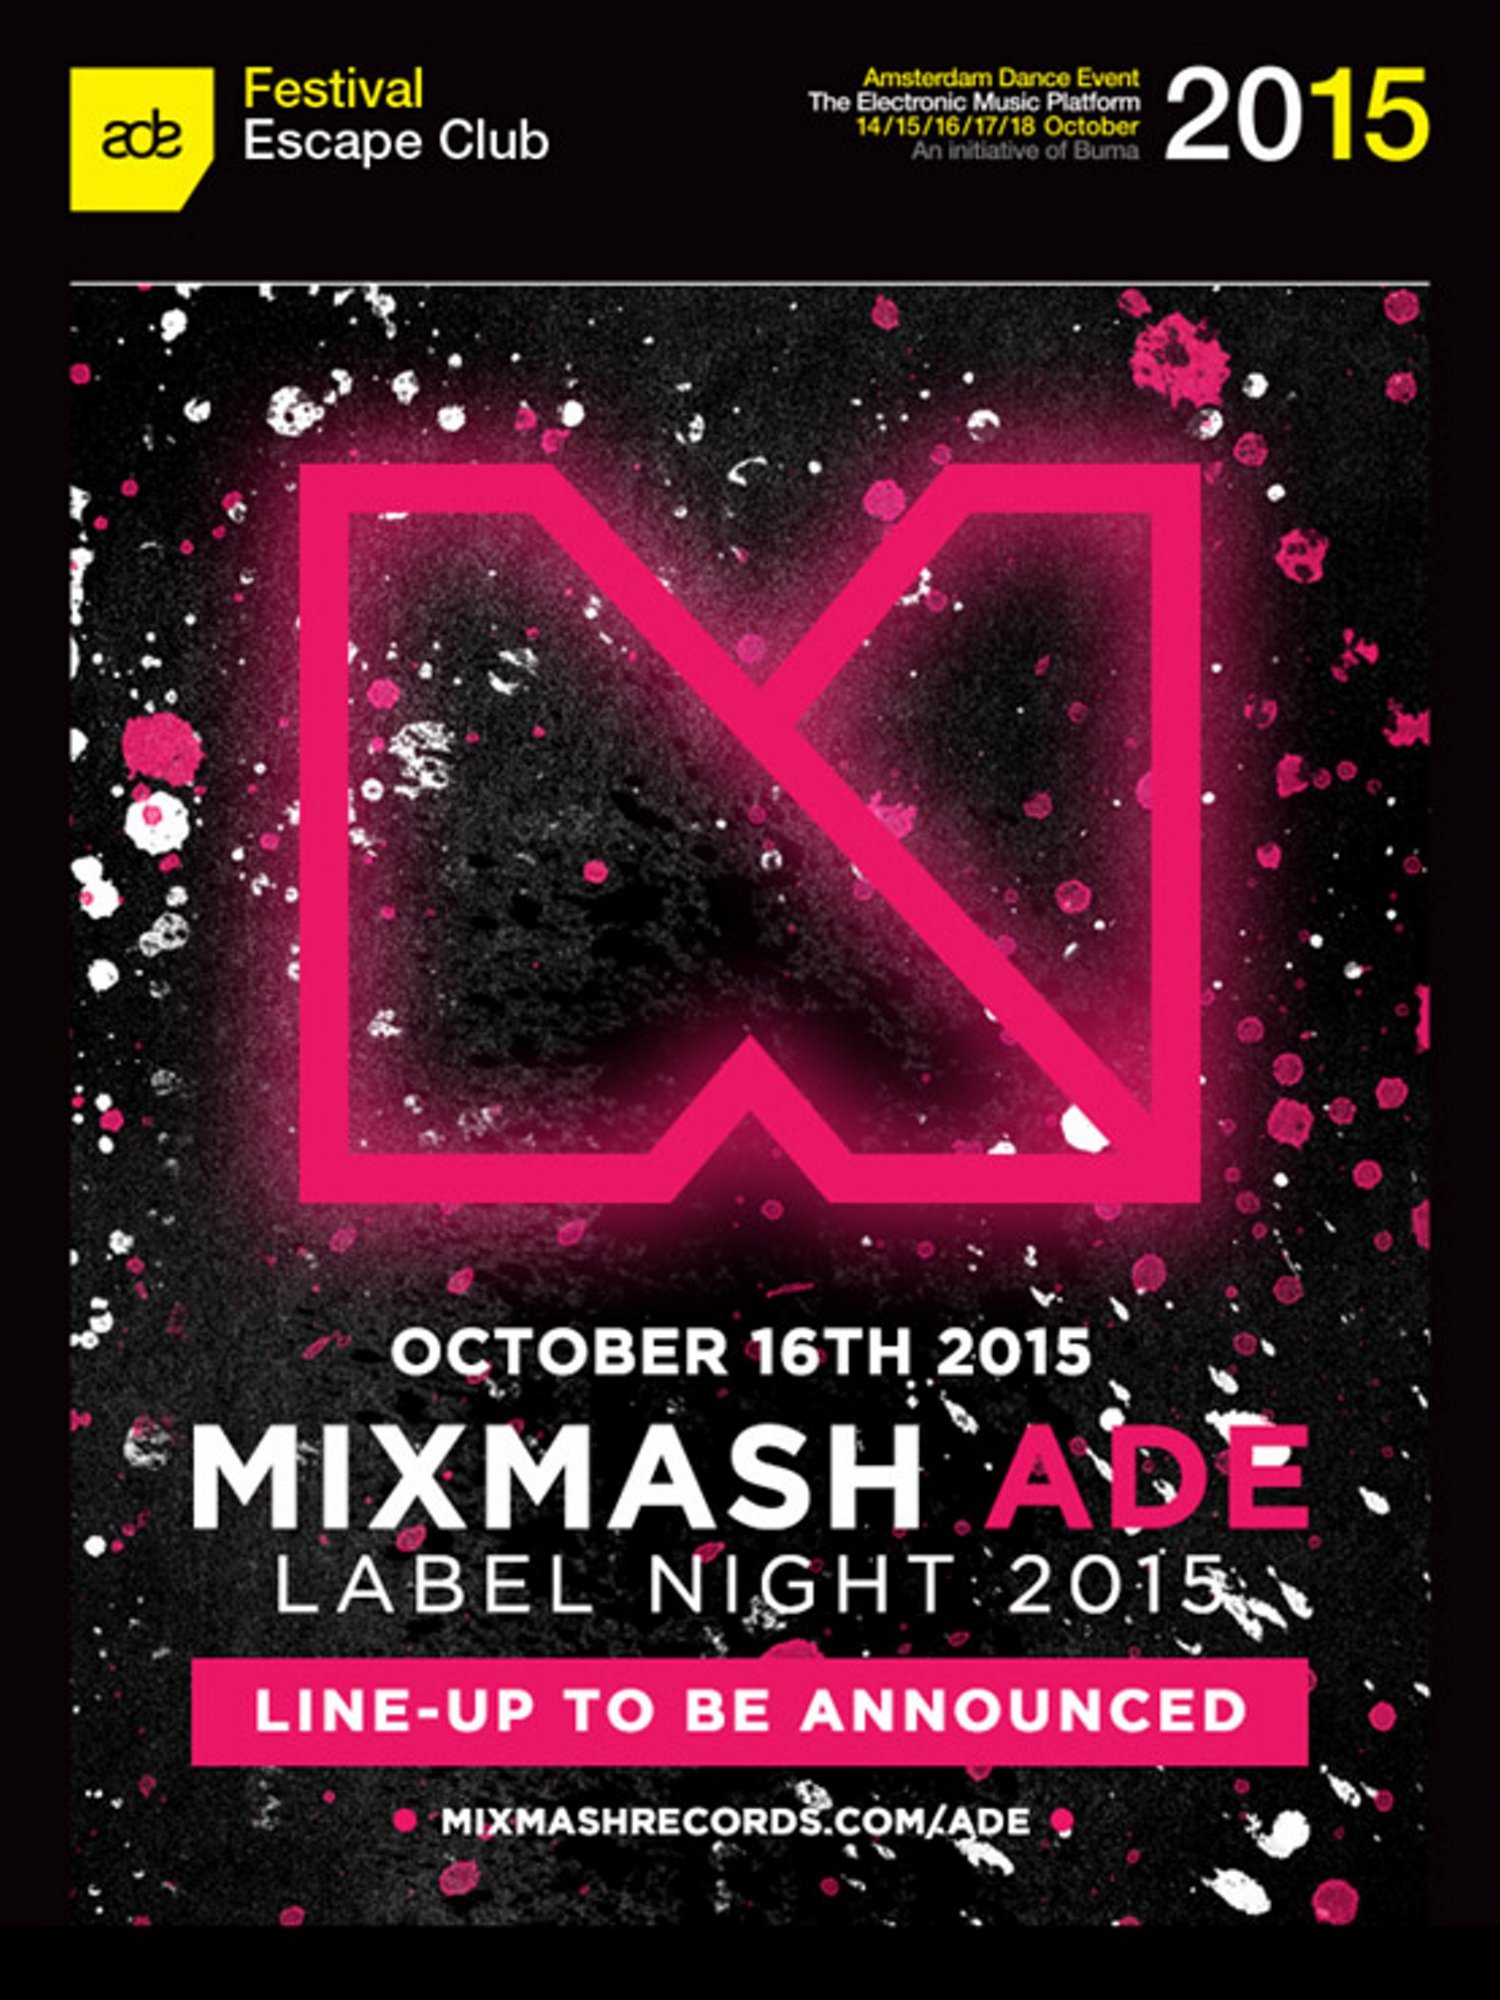 Mixmash label night - ADE